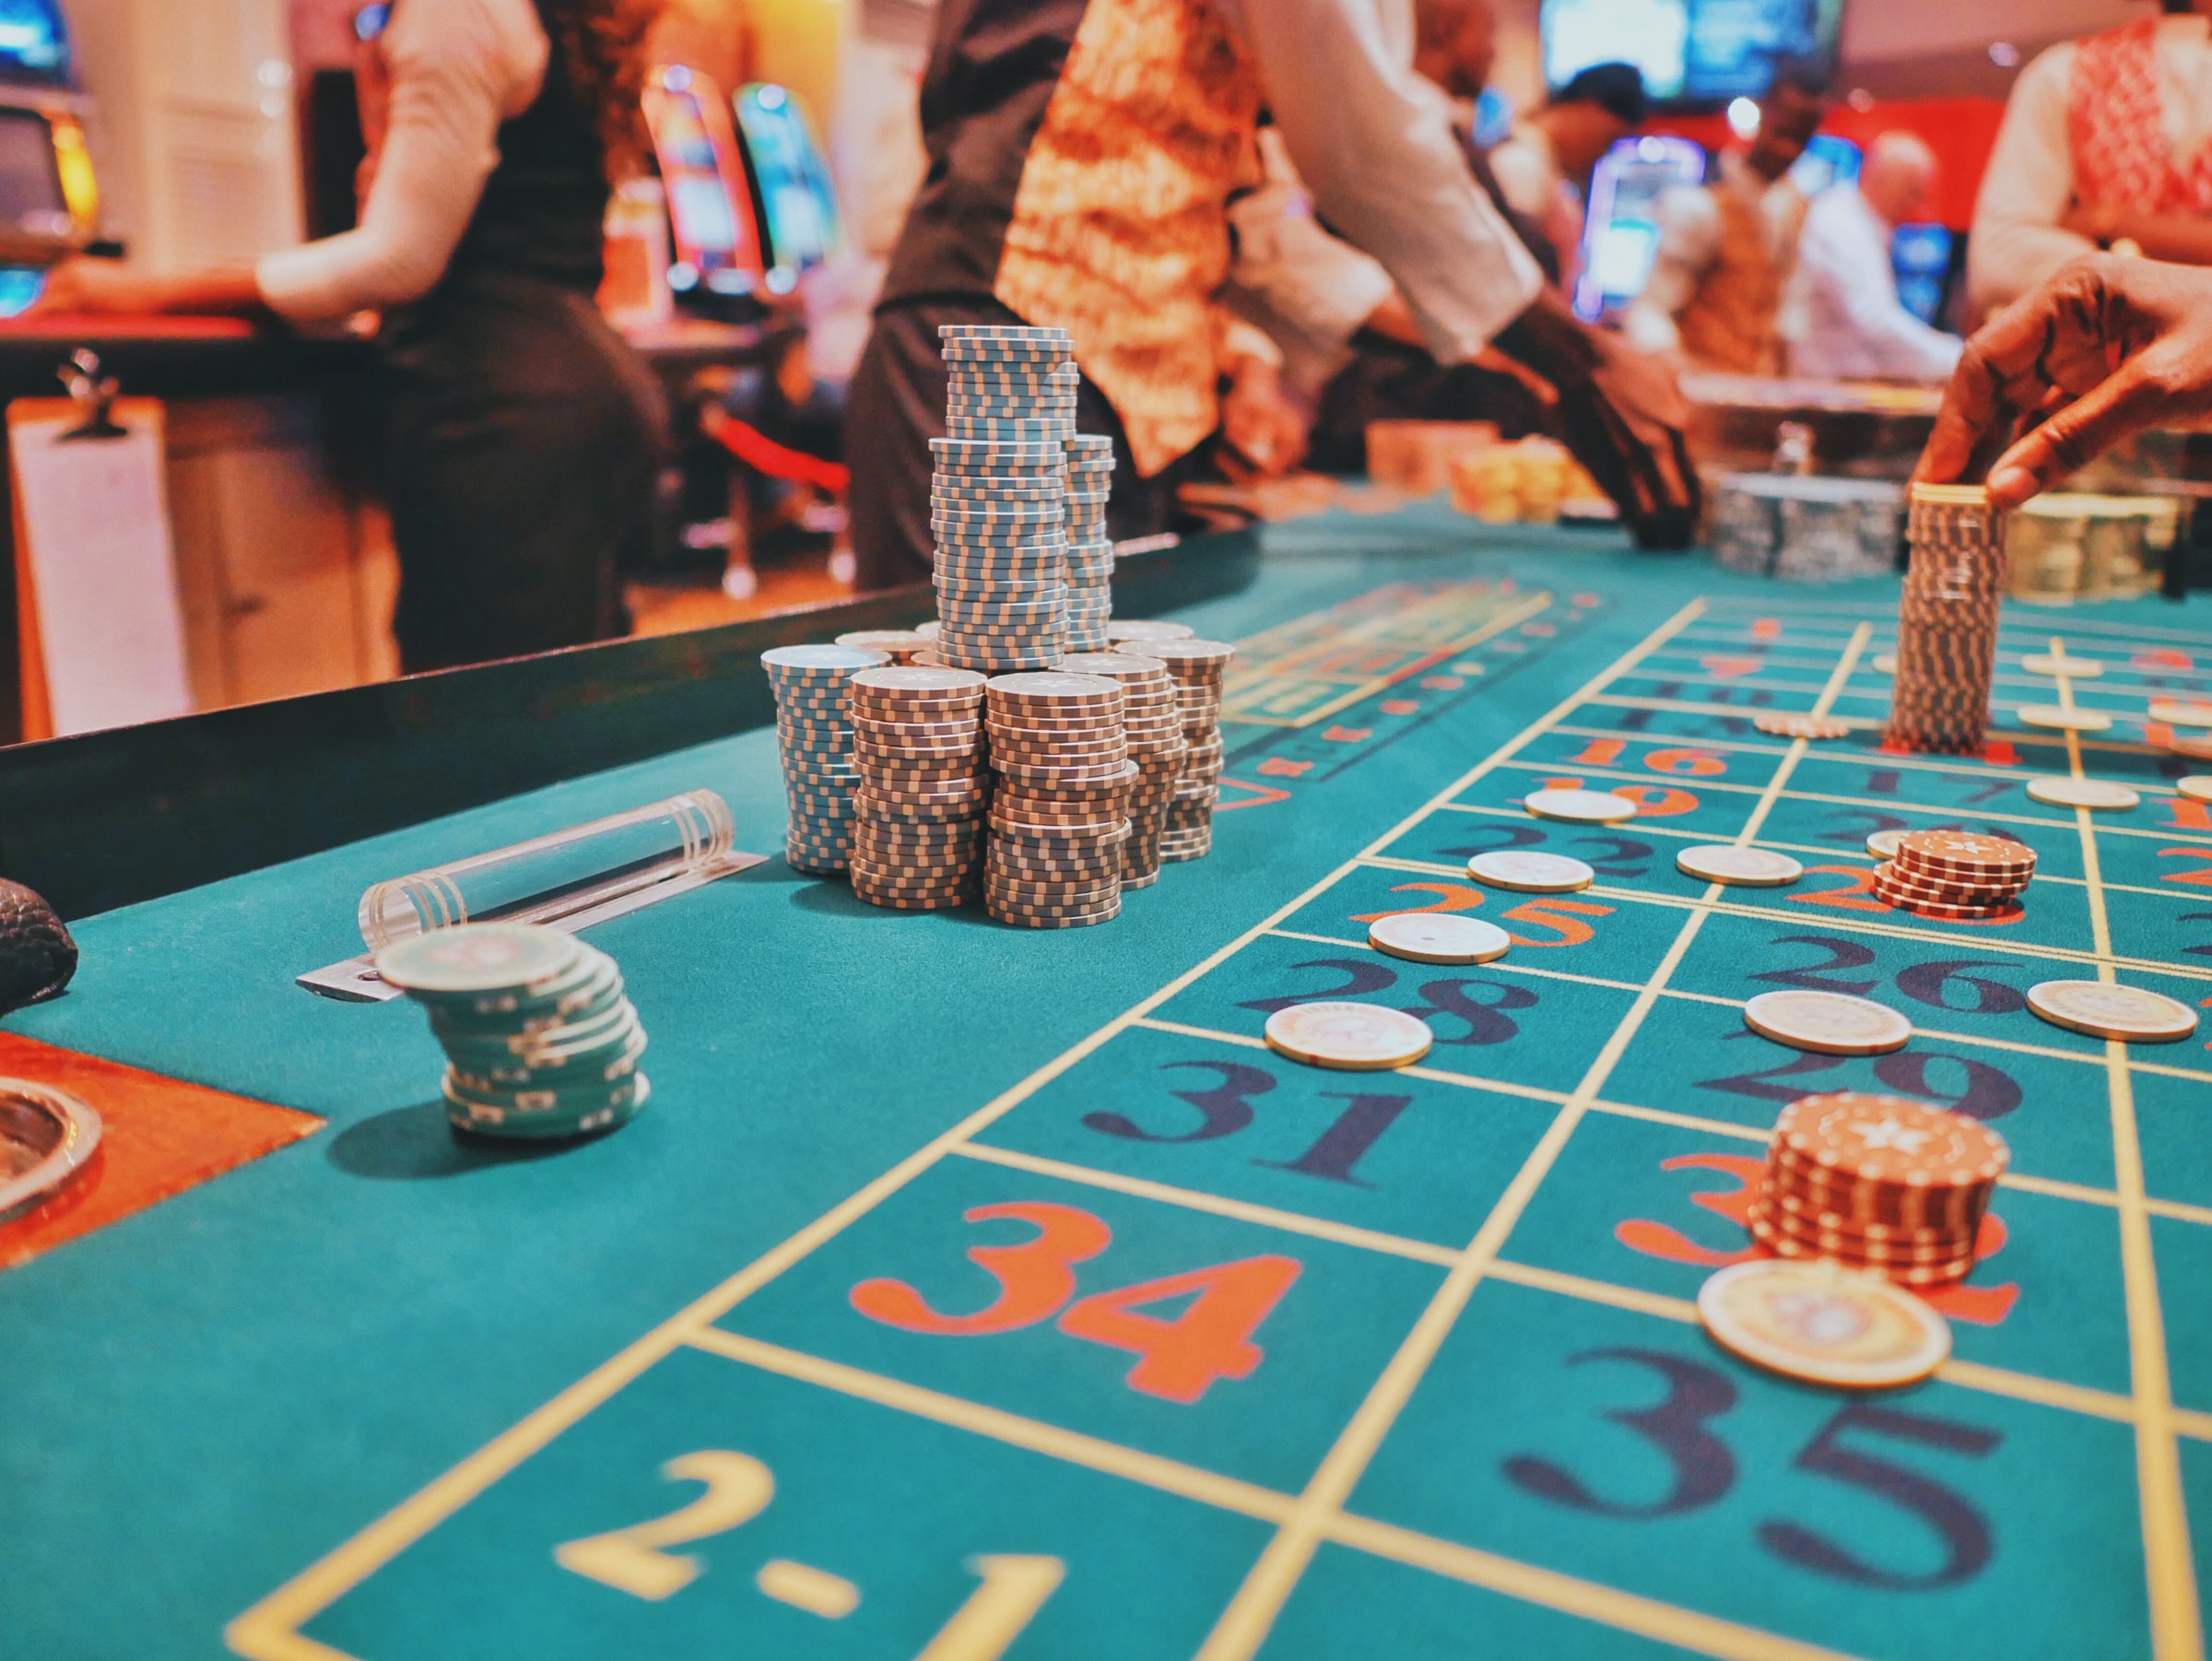 Kinas försvagade ekonomi kan skada casinoindustrin